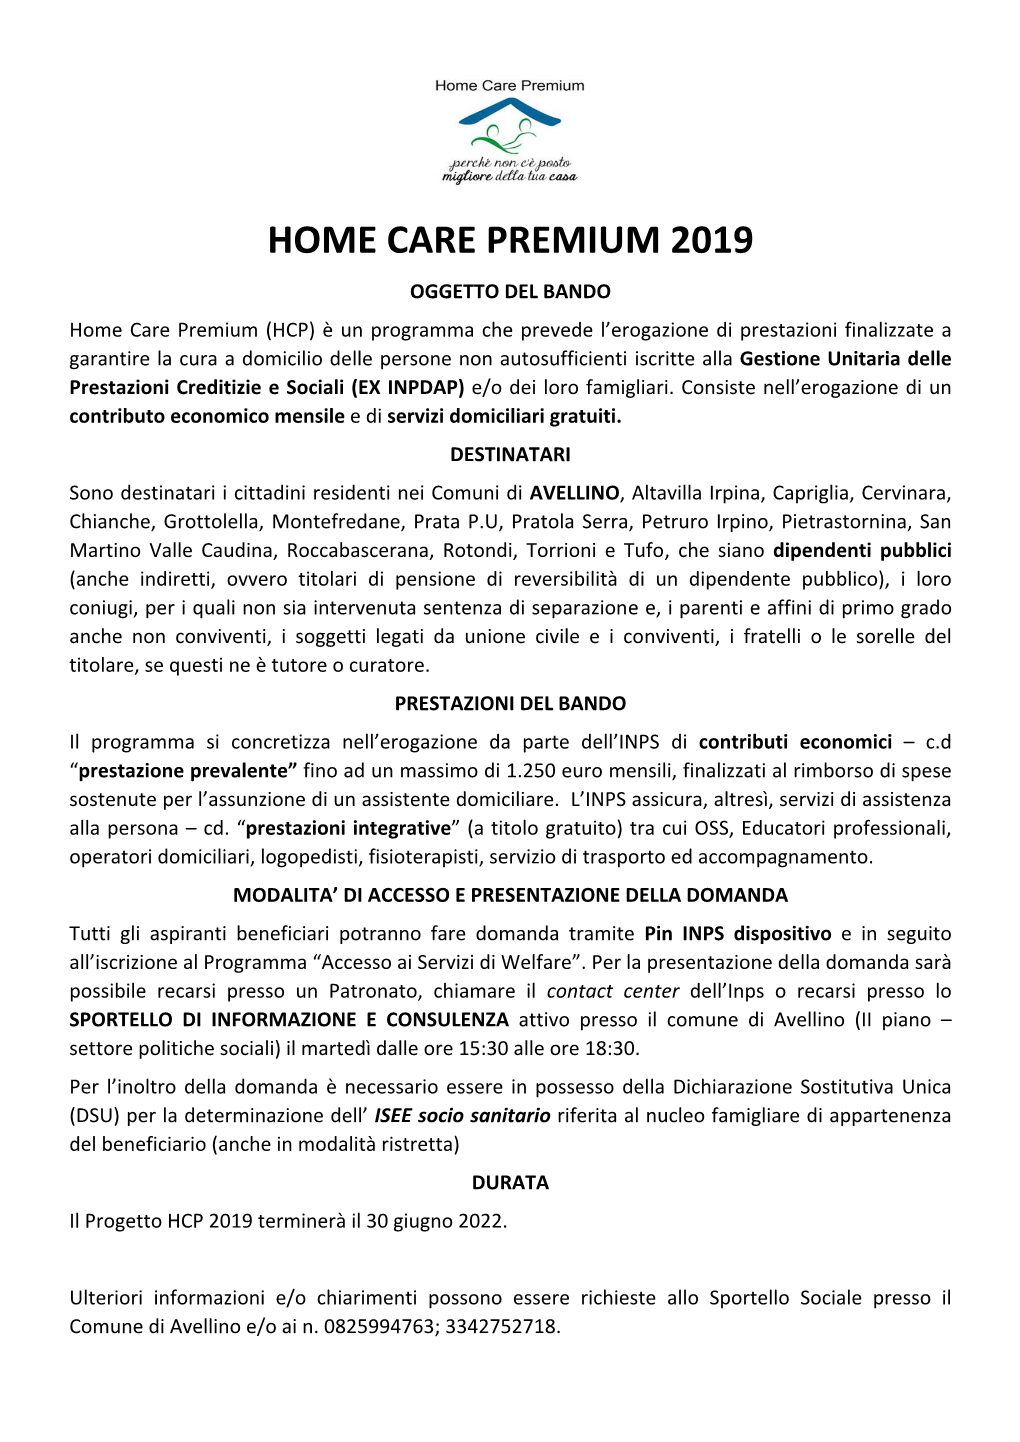 Home Care Premium 2019